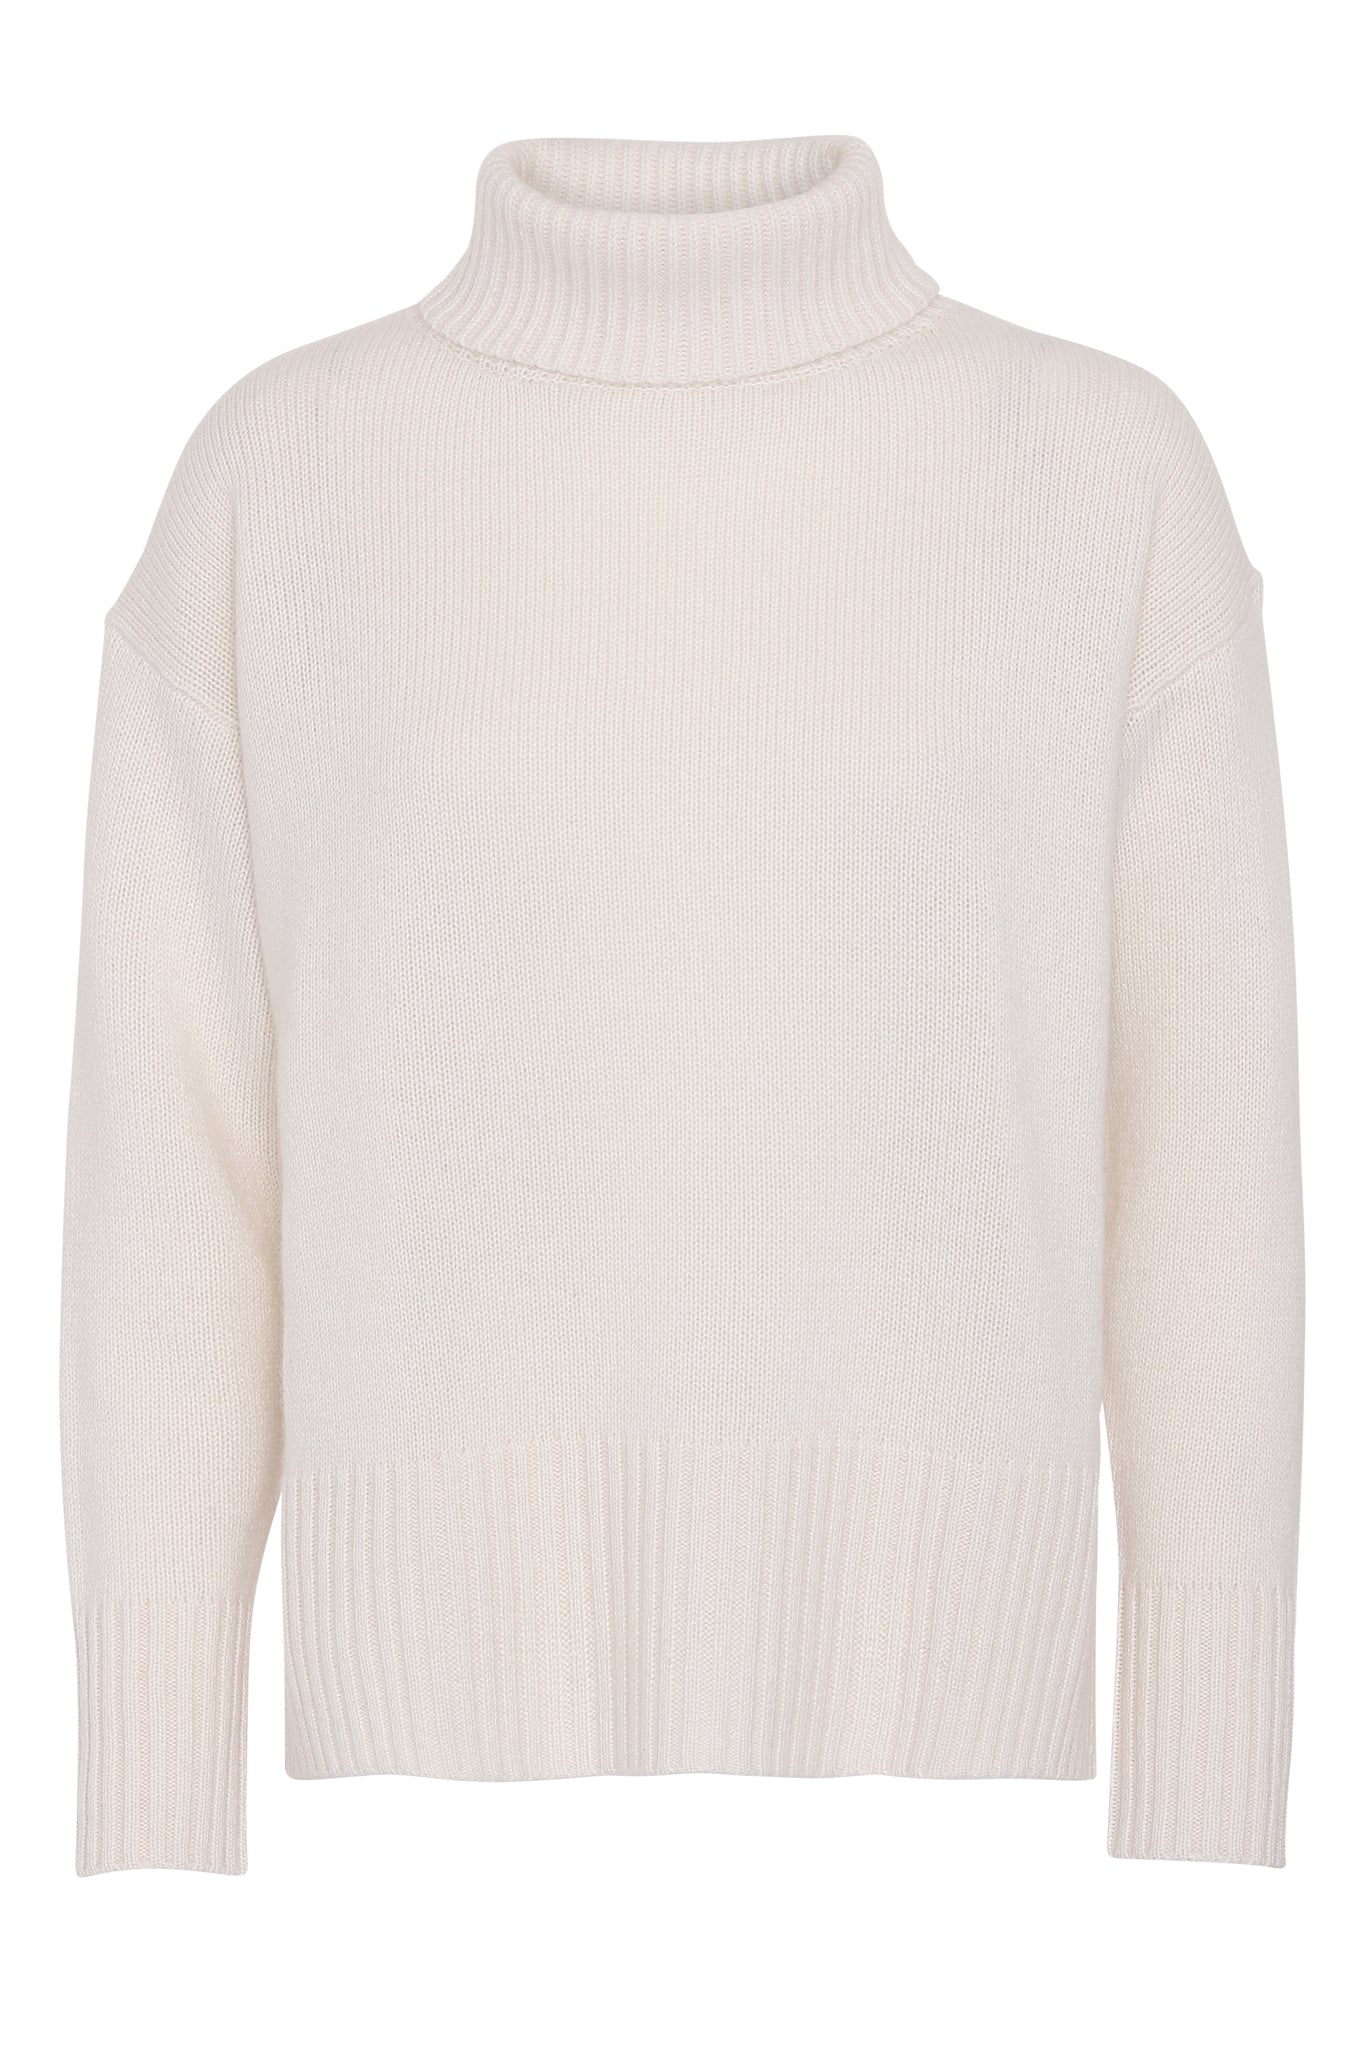 Marilyn - cashmere sweater med turtleneck - Hvid